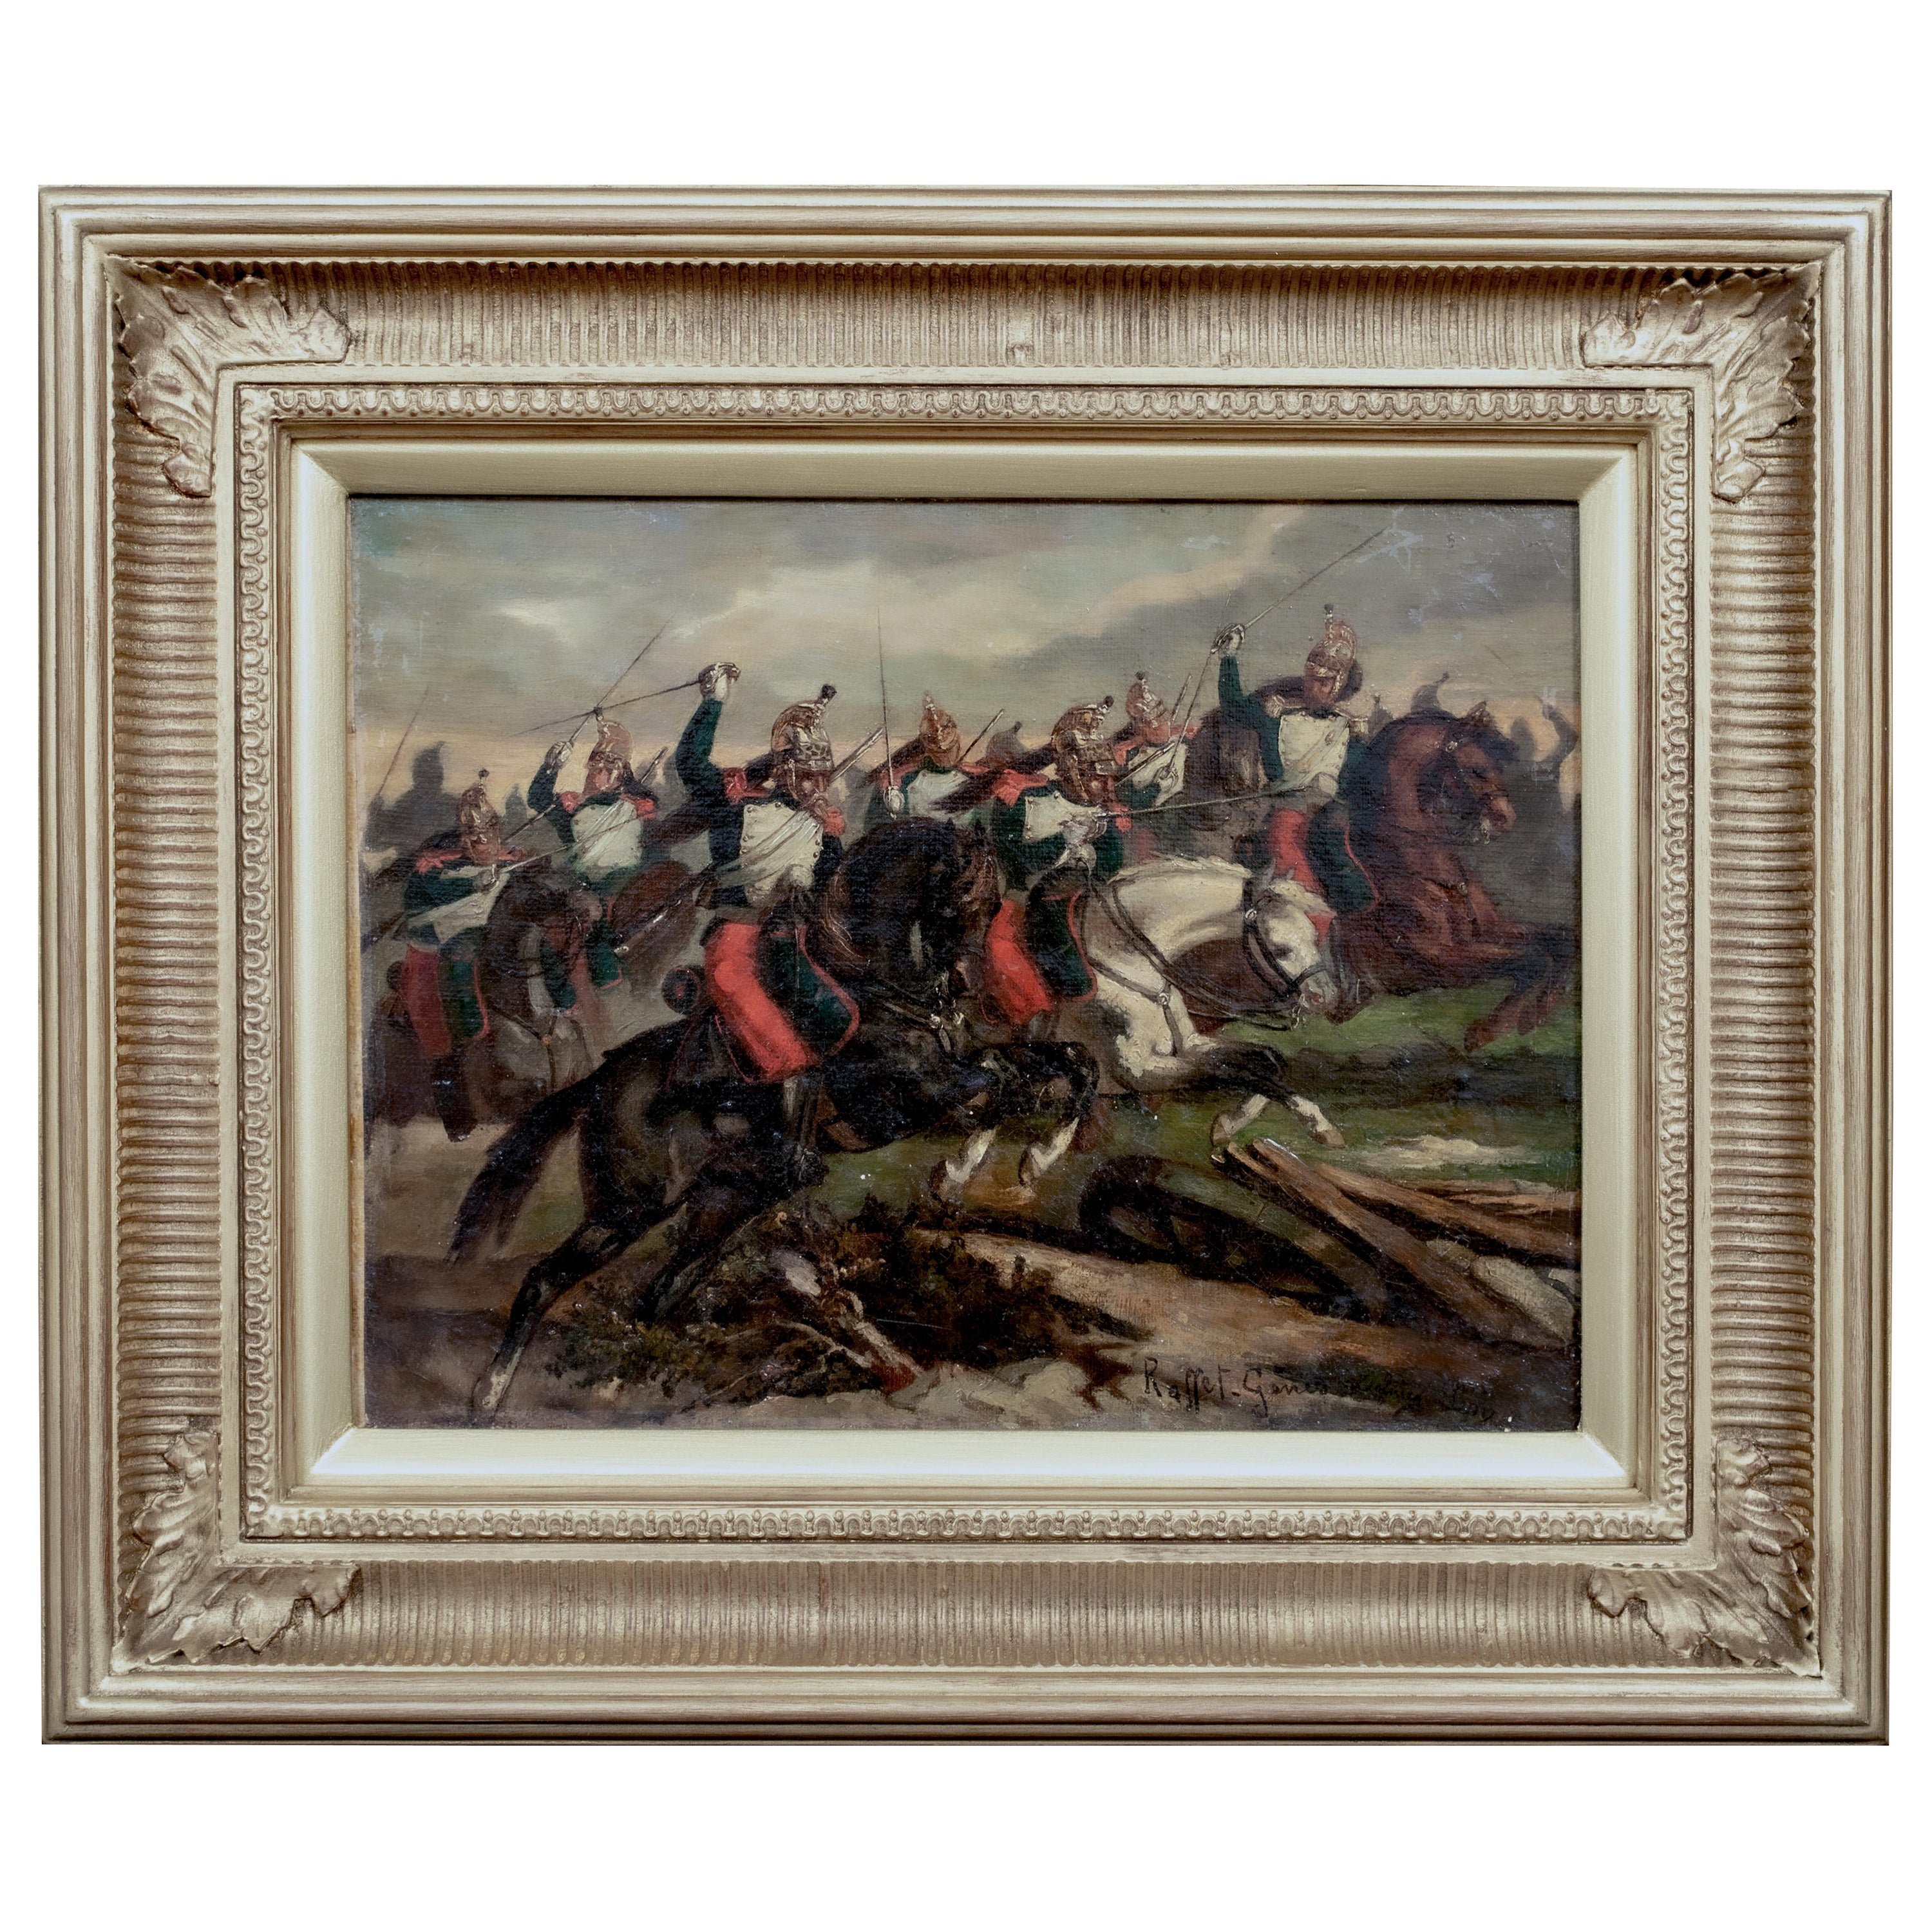 Portrait Painting Denis Auguste Marie Raffet - Charge des Cuirassiers lors de la bataille de Waterloo 19e siècle 